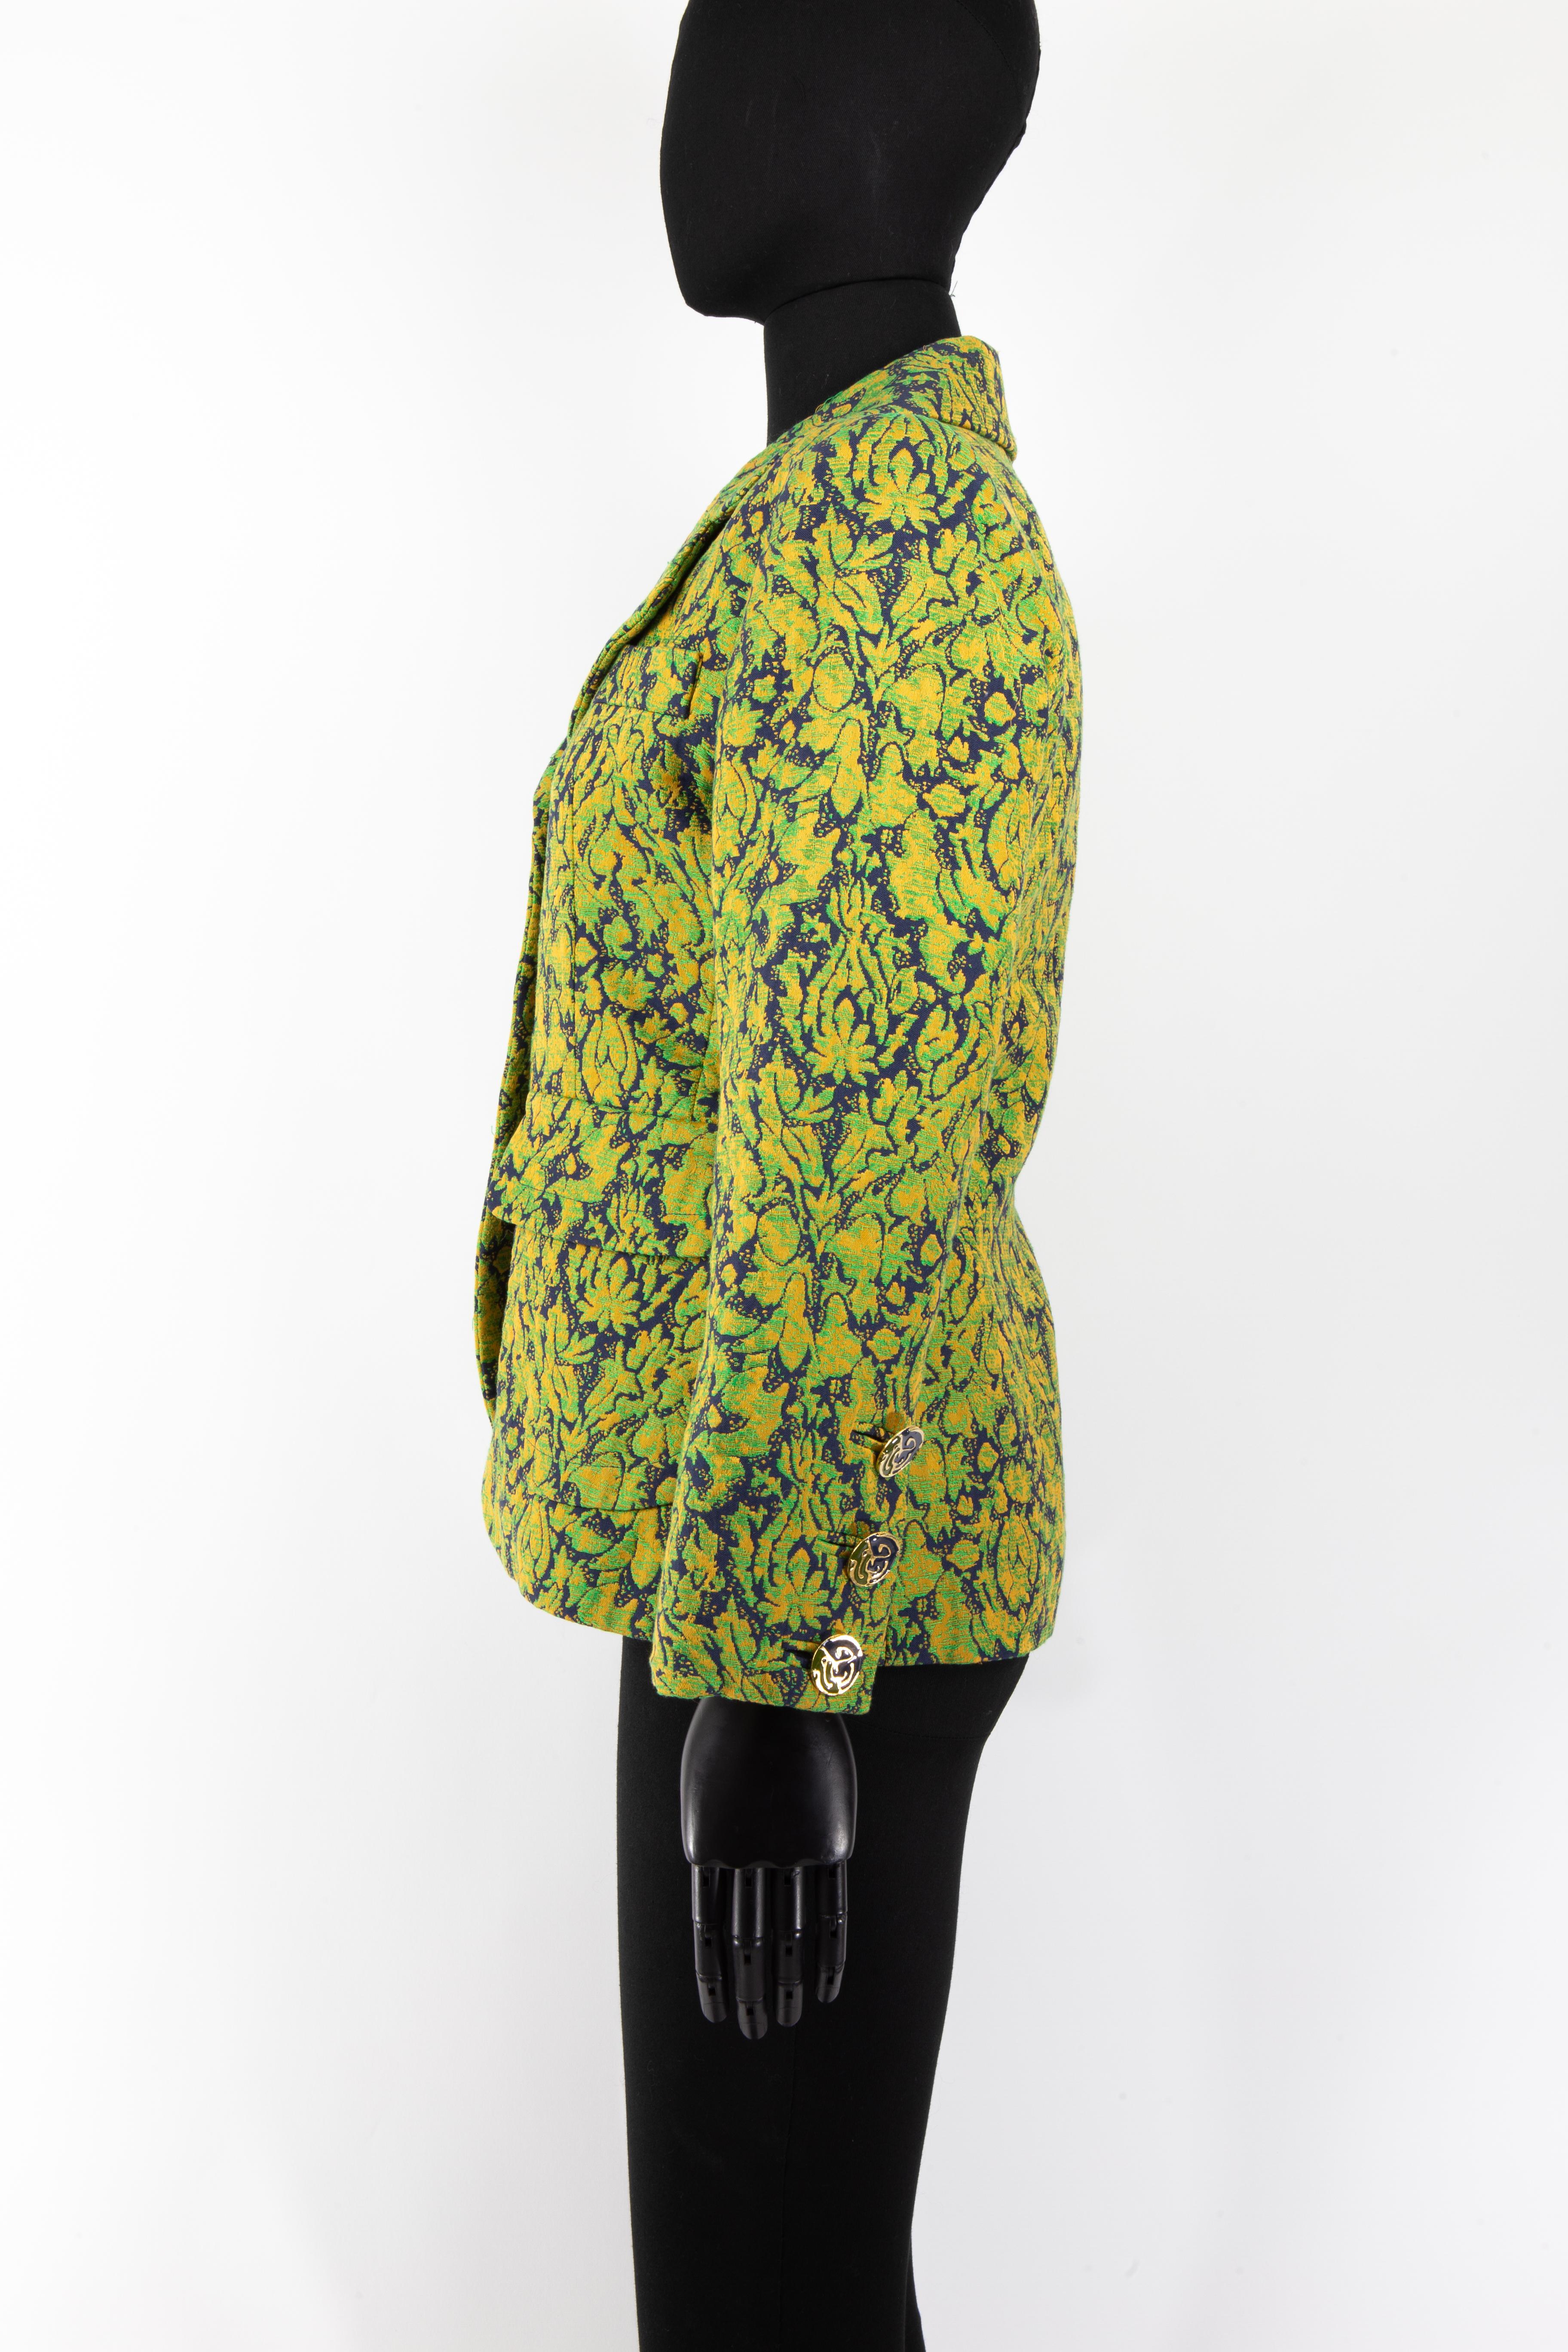 Eine marineblaue, grün-goldene Jacke von Yves Saint Laurent aus dem Jahr 1992 mit abstraktem Blumenbarockmuster. Die Vorderseite der Jacke ist mit vier emaillierten Knöpfen verziert, die zum Thema des Musters passen, das die Jacke bedeckt. Diese